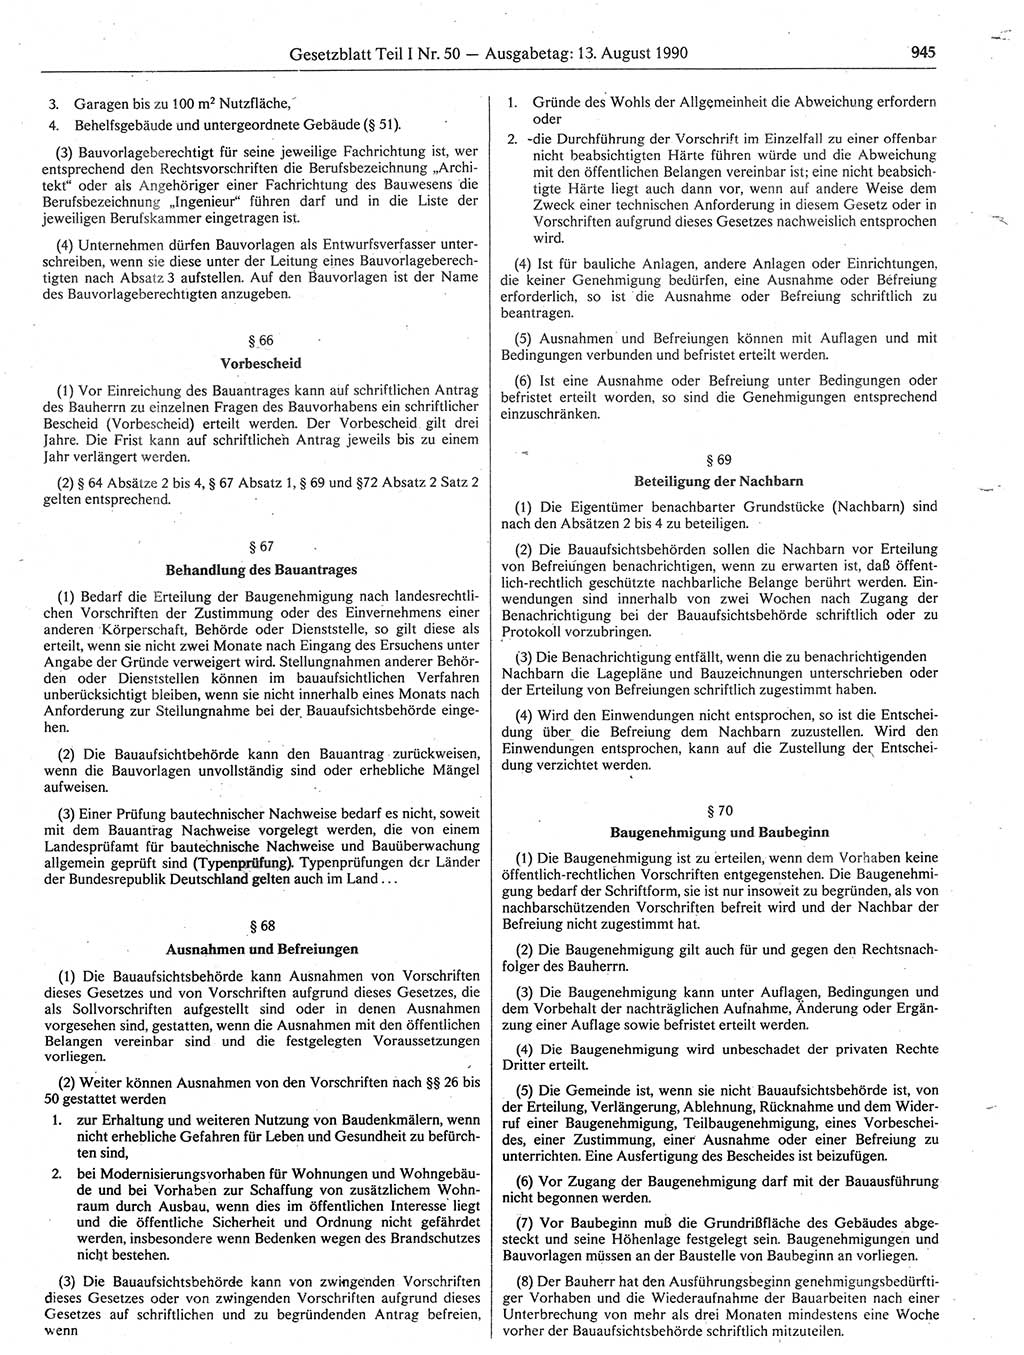 Gesetzblatt (GBl.) der Deutschen Demokratischen Republik (DDR) Teil Ⅰ 1990, Seite 945 (GBl. DDR Ⅰ 1990, S. 945)